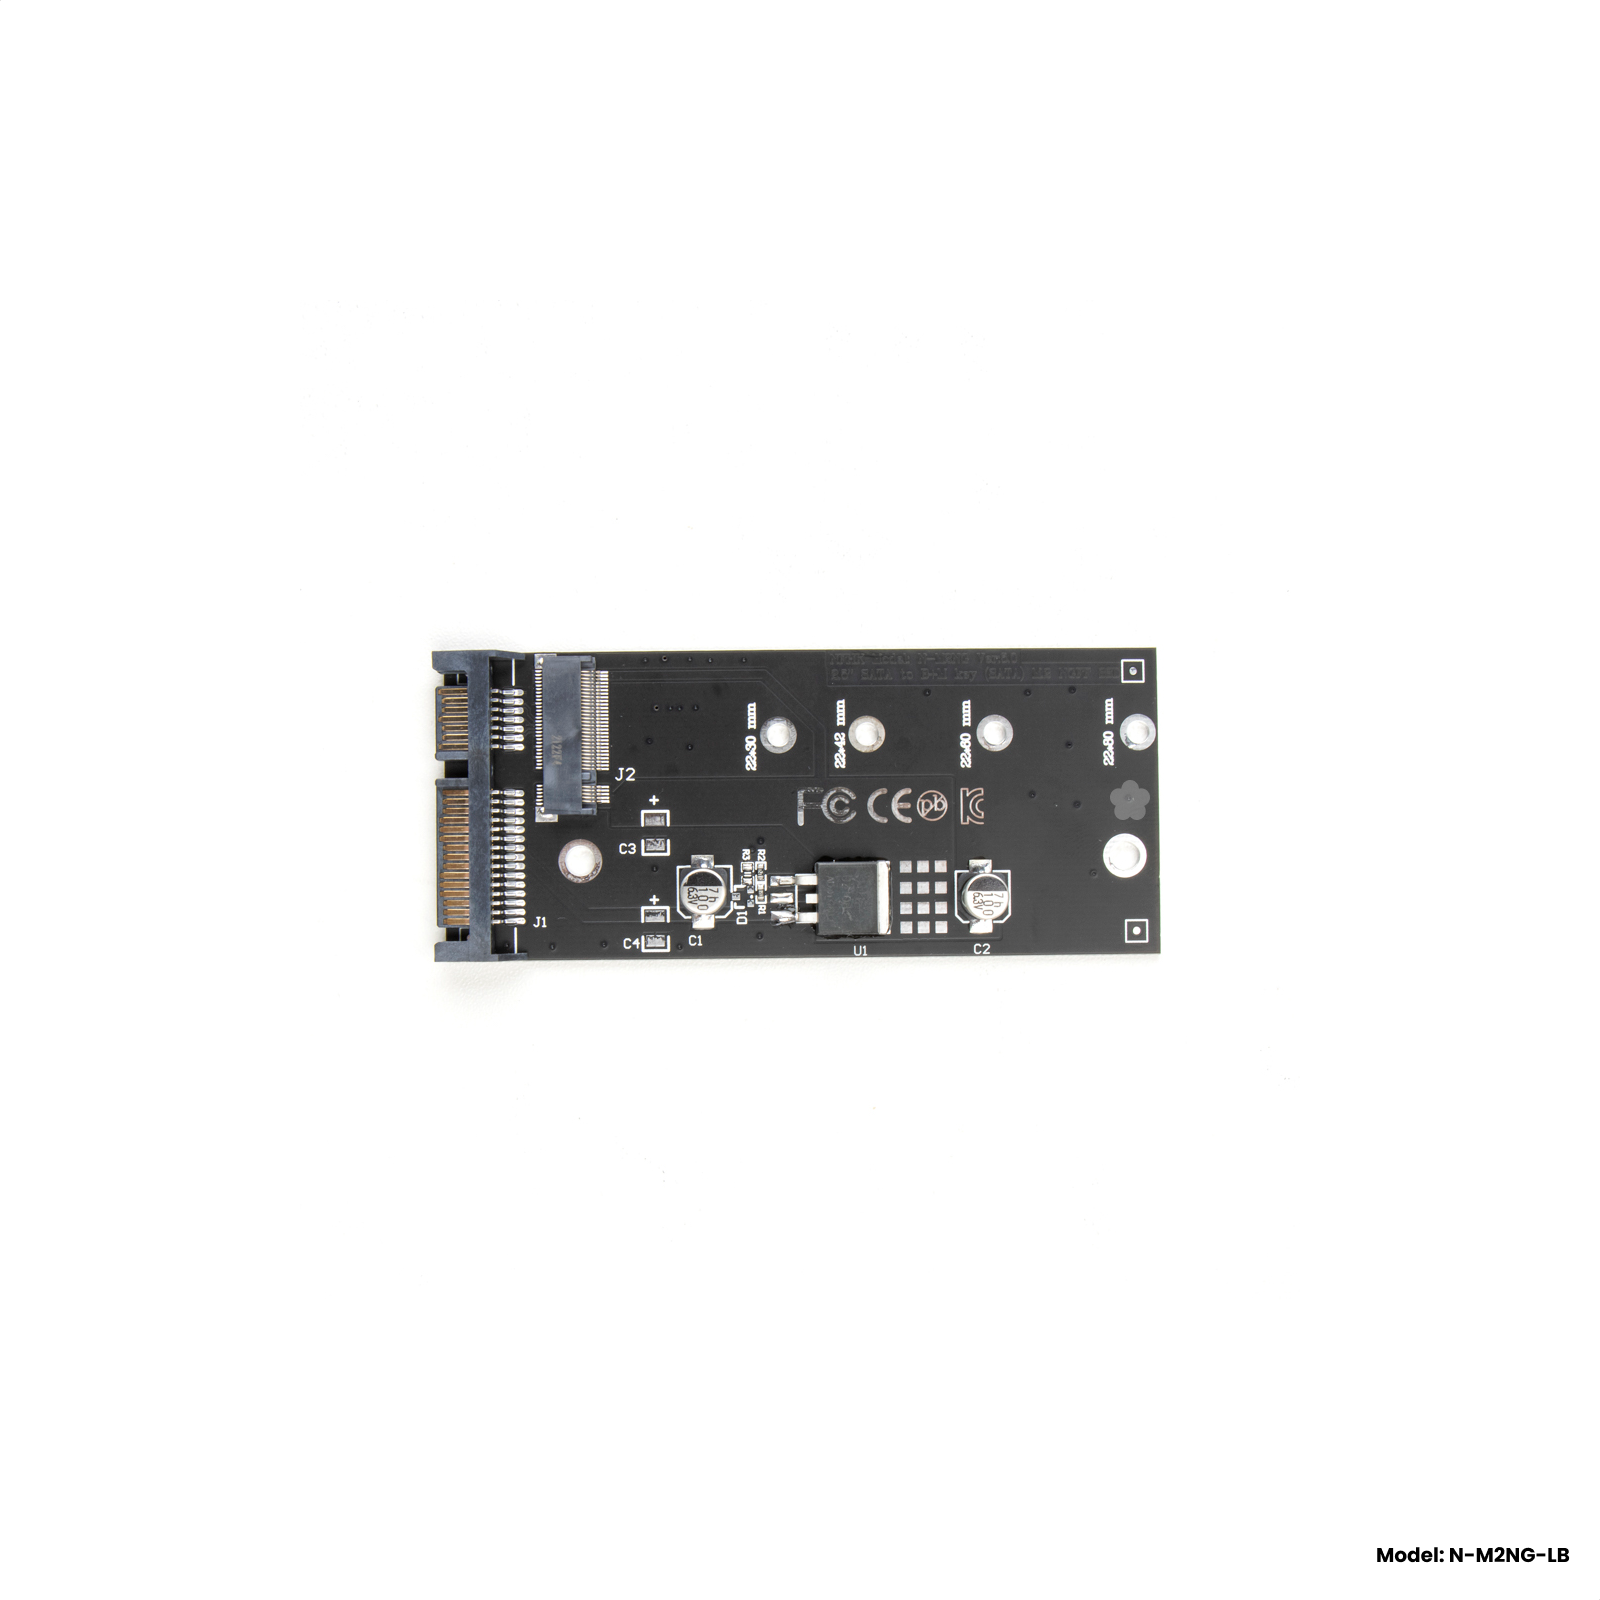 Адаптер-переходник для установки SSD M2 SATA (B+M key) в разъем 25" SATA черный NFHK N-M2NG-LB